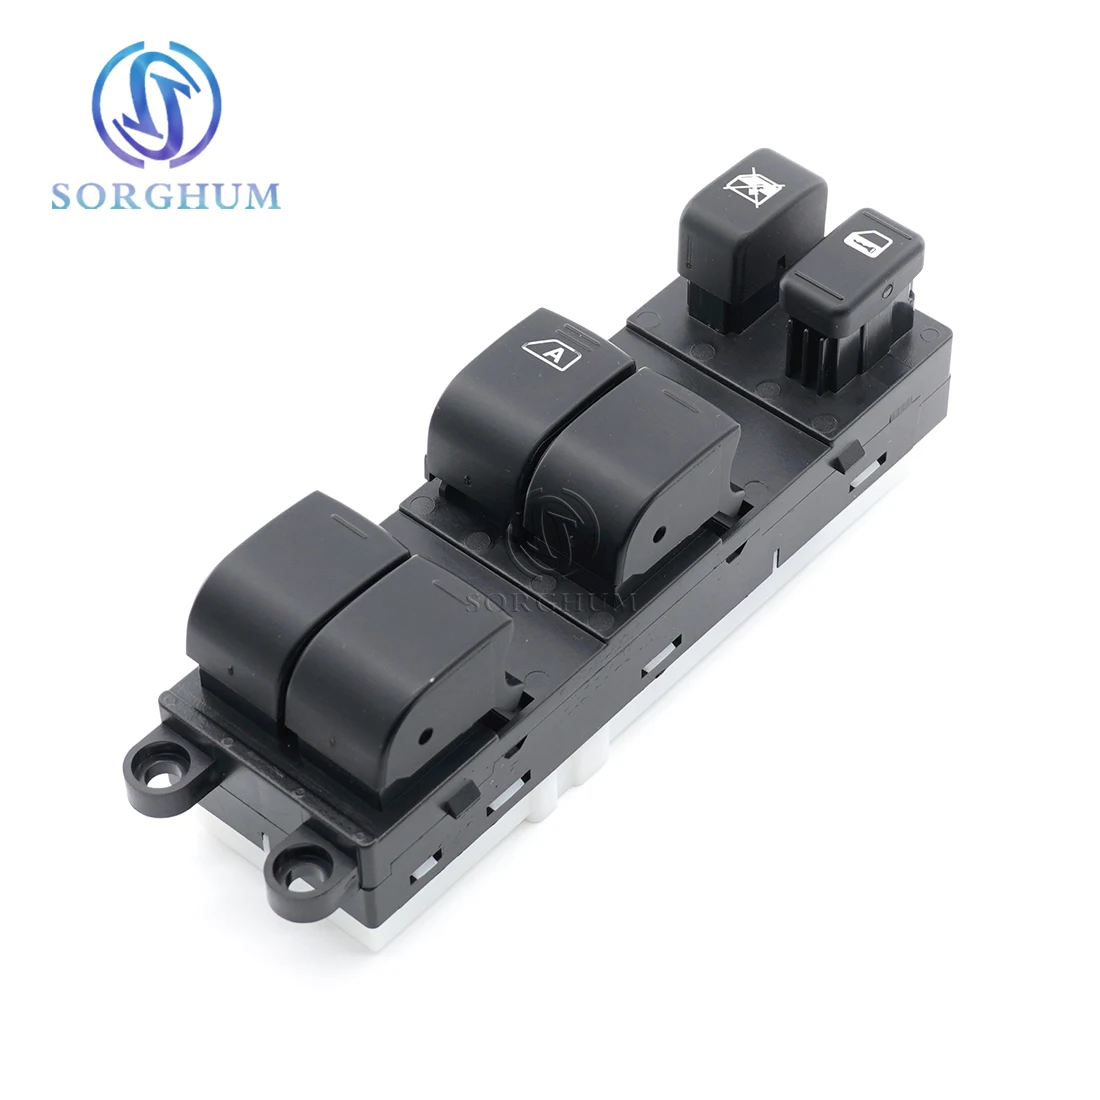 Sorghum-Interruptor de Control maestro para ventana eléctrica, accesorio para Nissan Tiida Rogue Versa Pathfinder, 25401-1JY0A 25401-EL30A